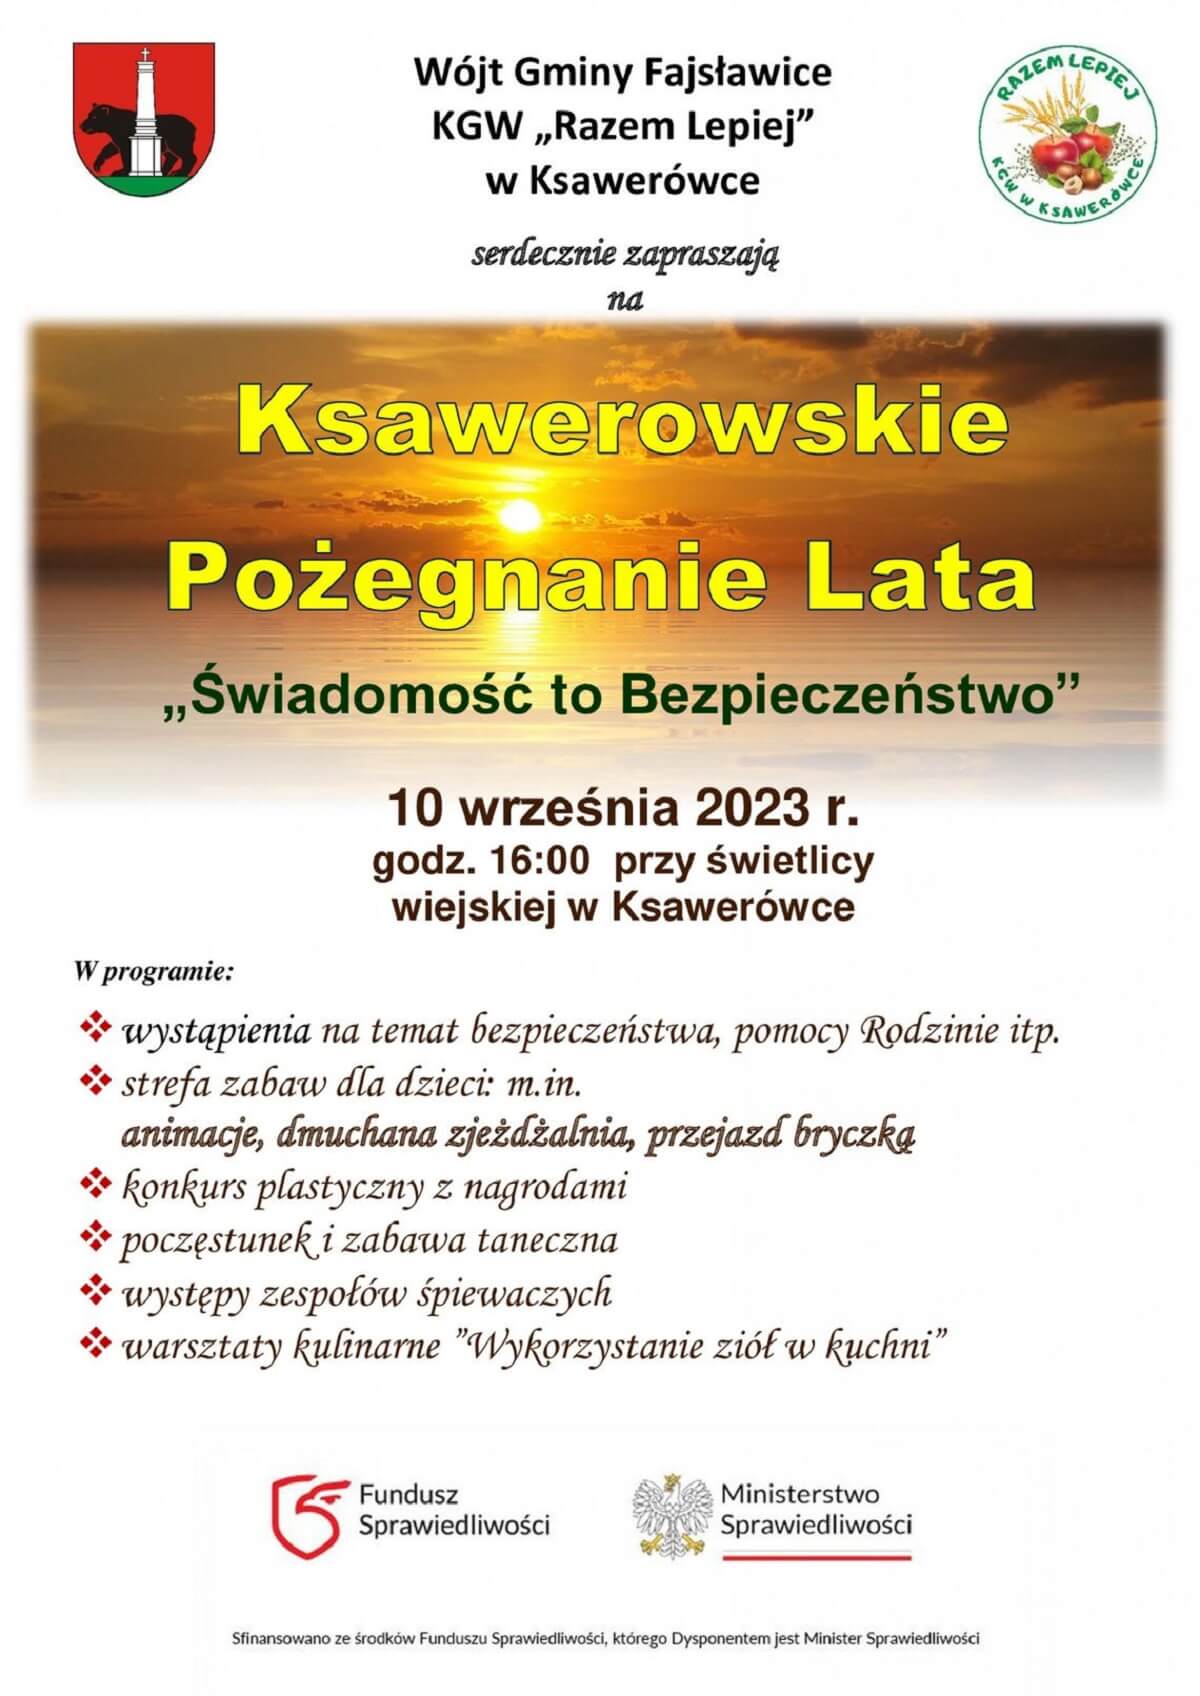 Ksawerowskie Pożegnanie Lata 2023 - plakat, program wydarzenia